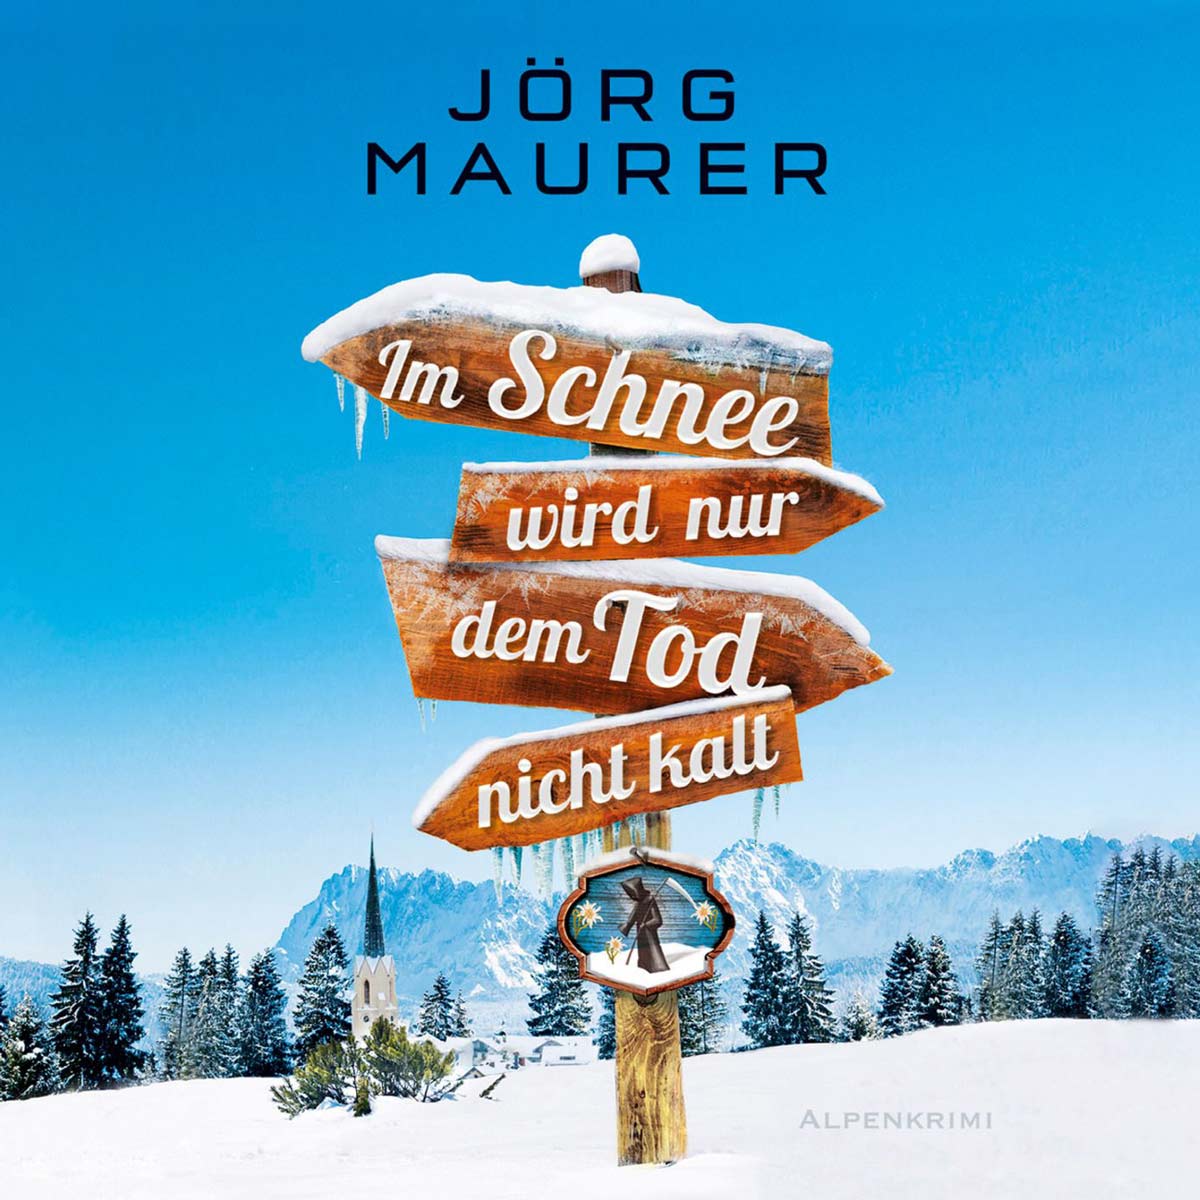 Müller Schreibwaren Fachgeschäft in Eppingen: Im Schnee wird nur dem Tod nicht kalt - der neu Alpenkrimi Jörg Maurer